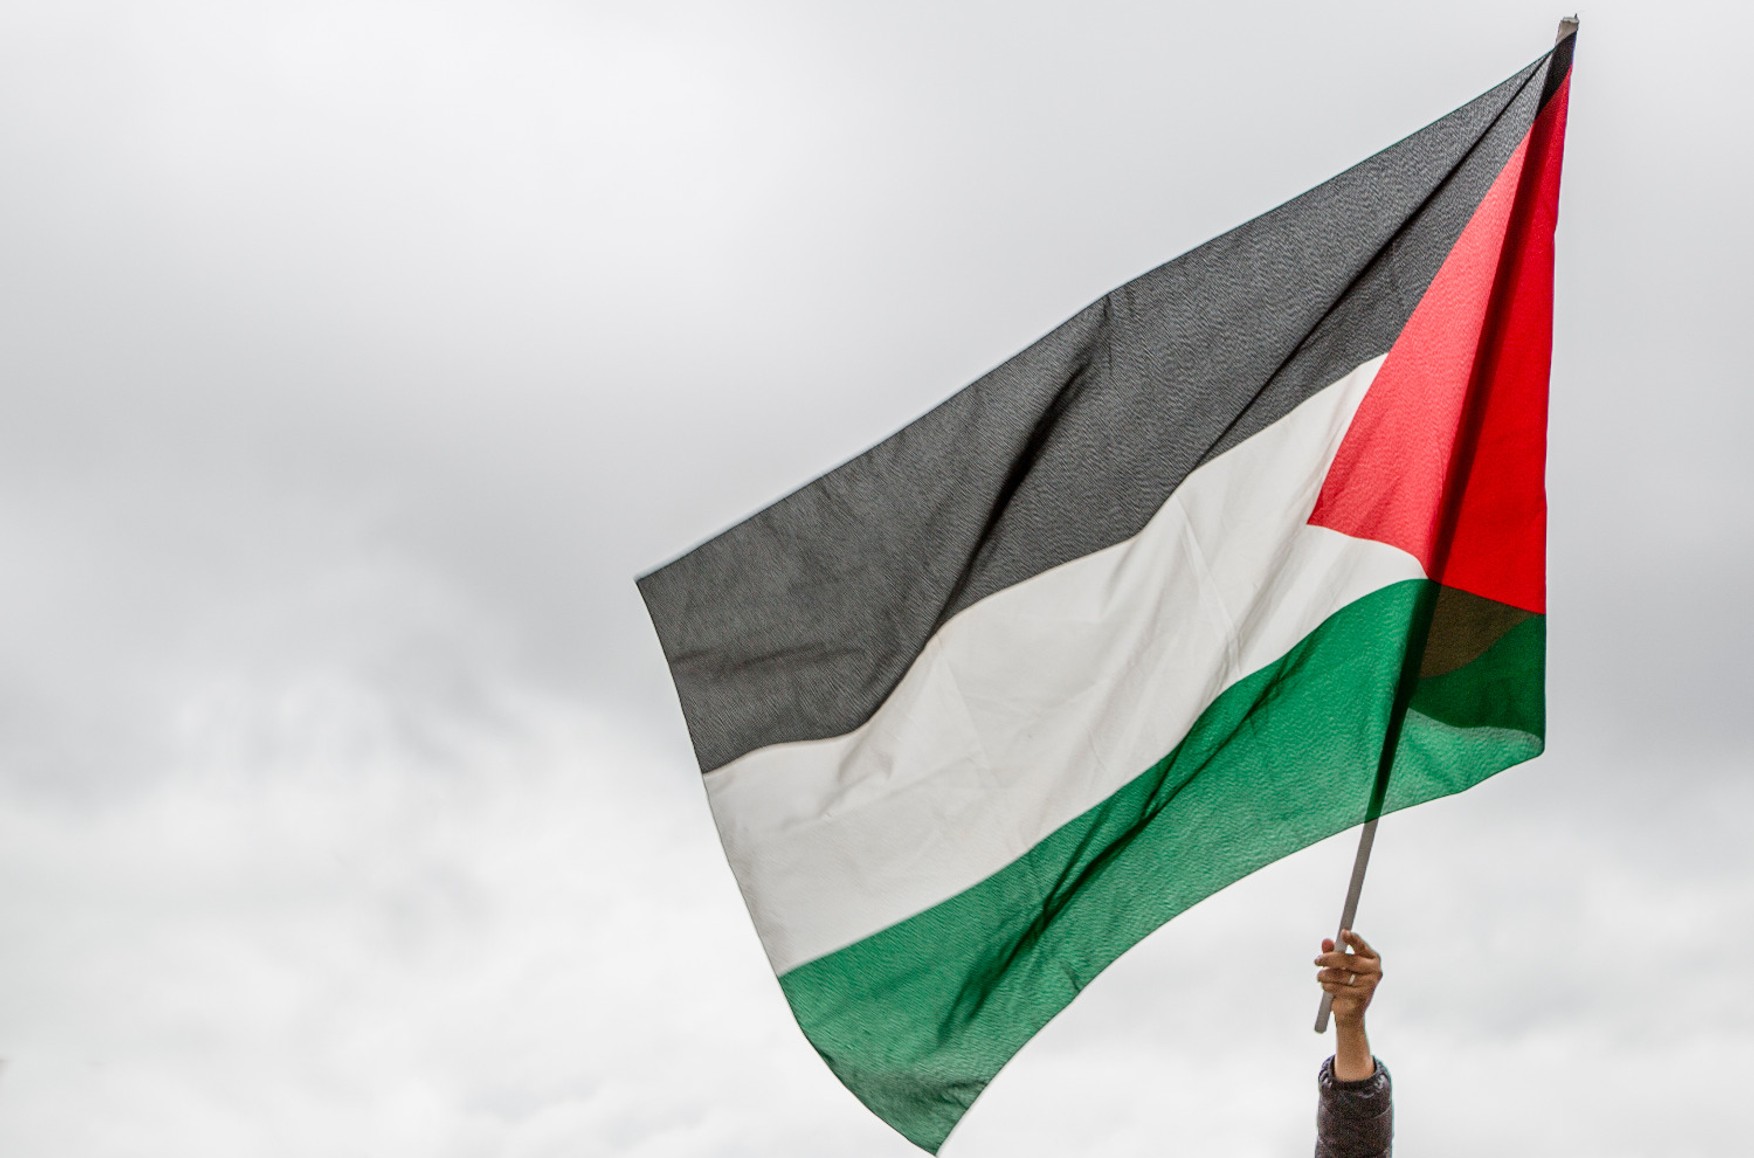 Израильский министр назвал флаг Палестины «символом террористической организации», полиция получила указание флаги срывать